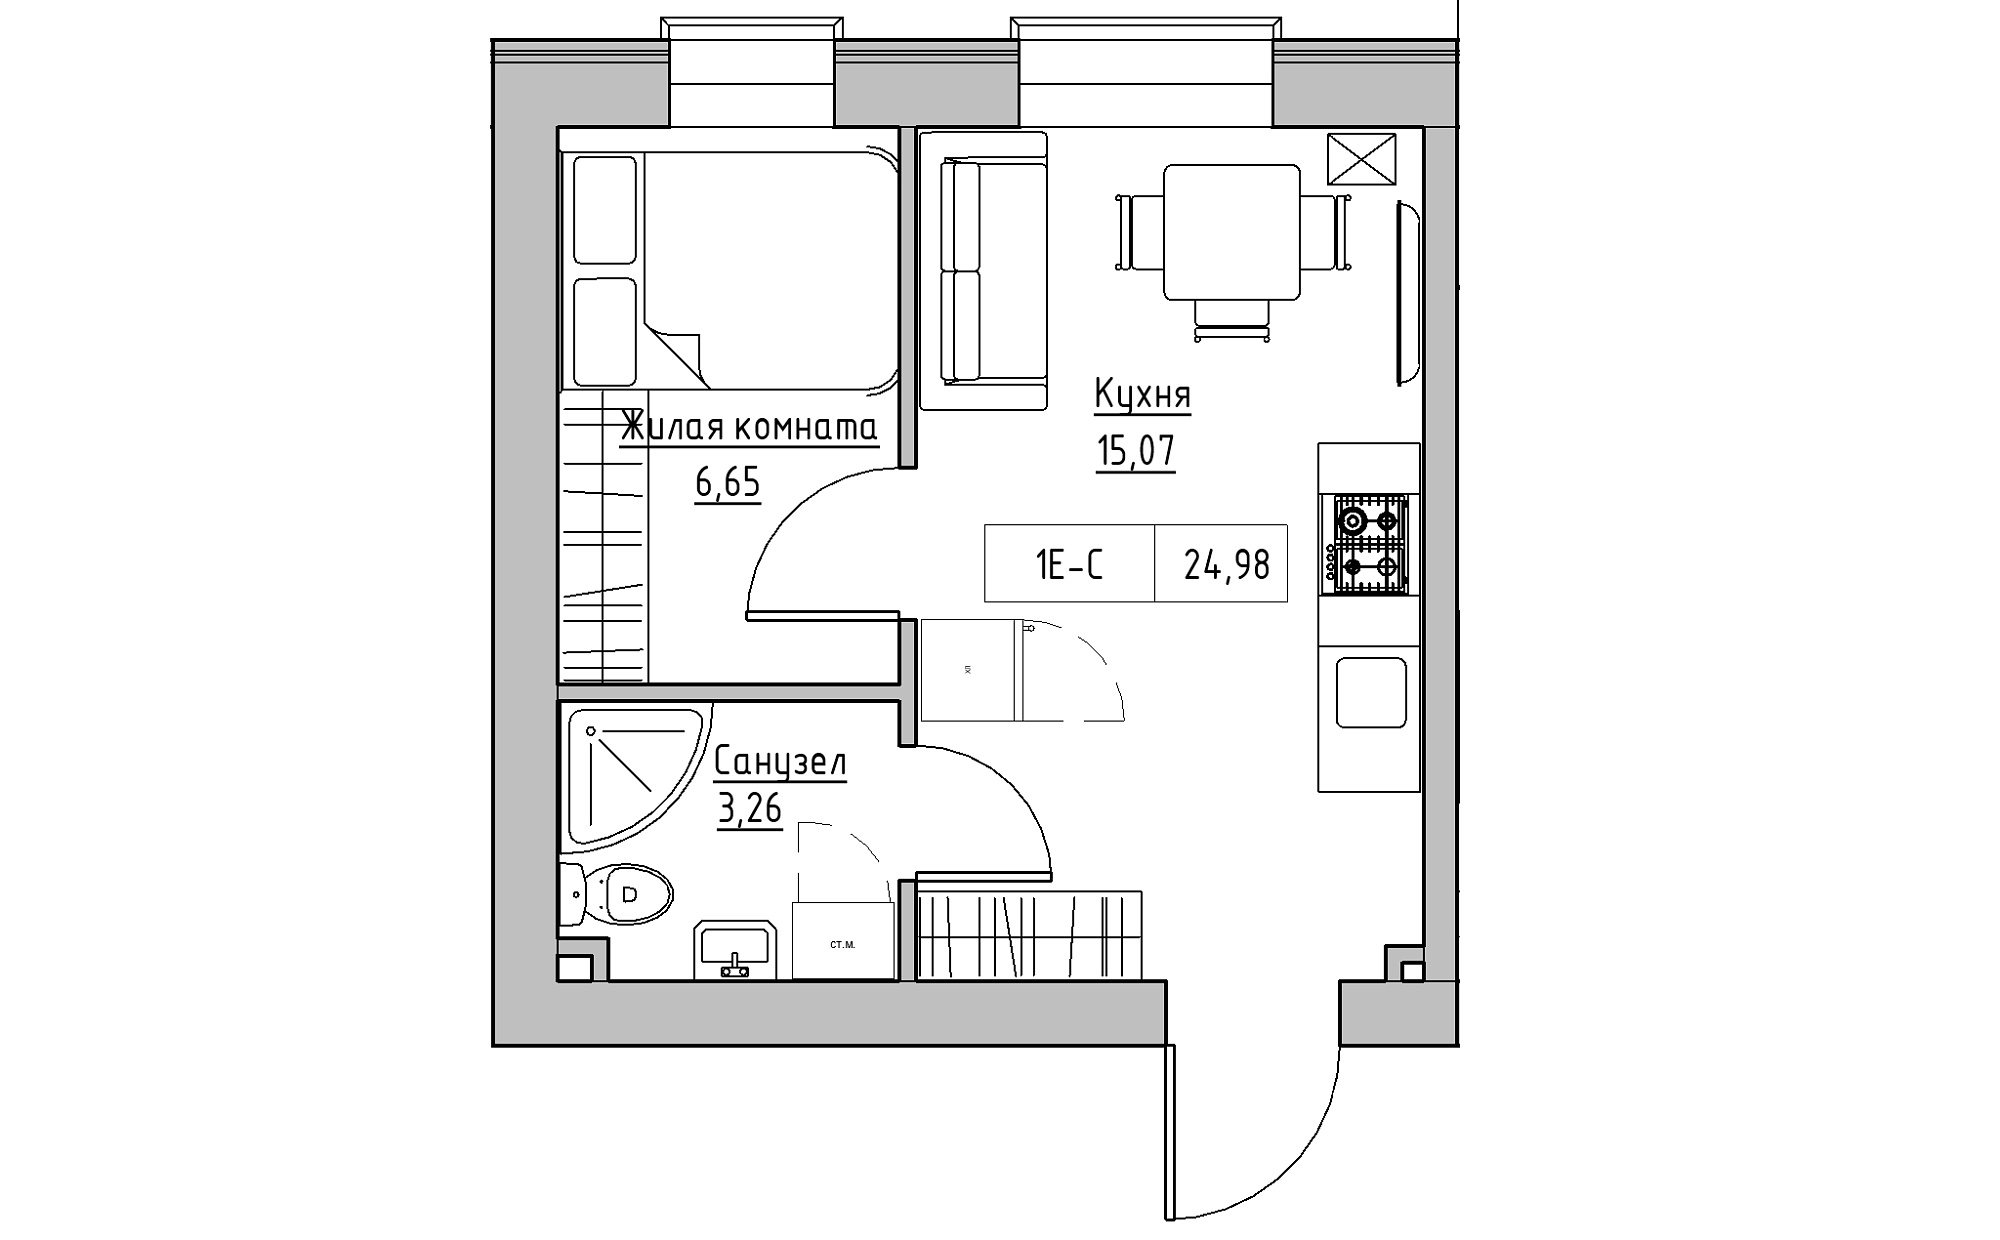 Планування 1-к квартира площею 24.98м2, KS-022-04/0004.